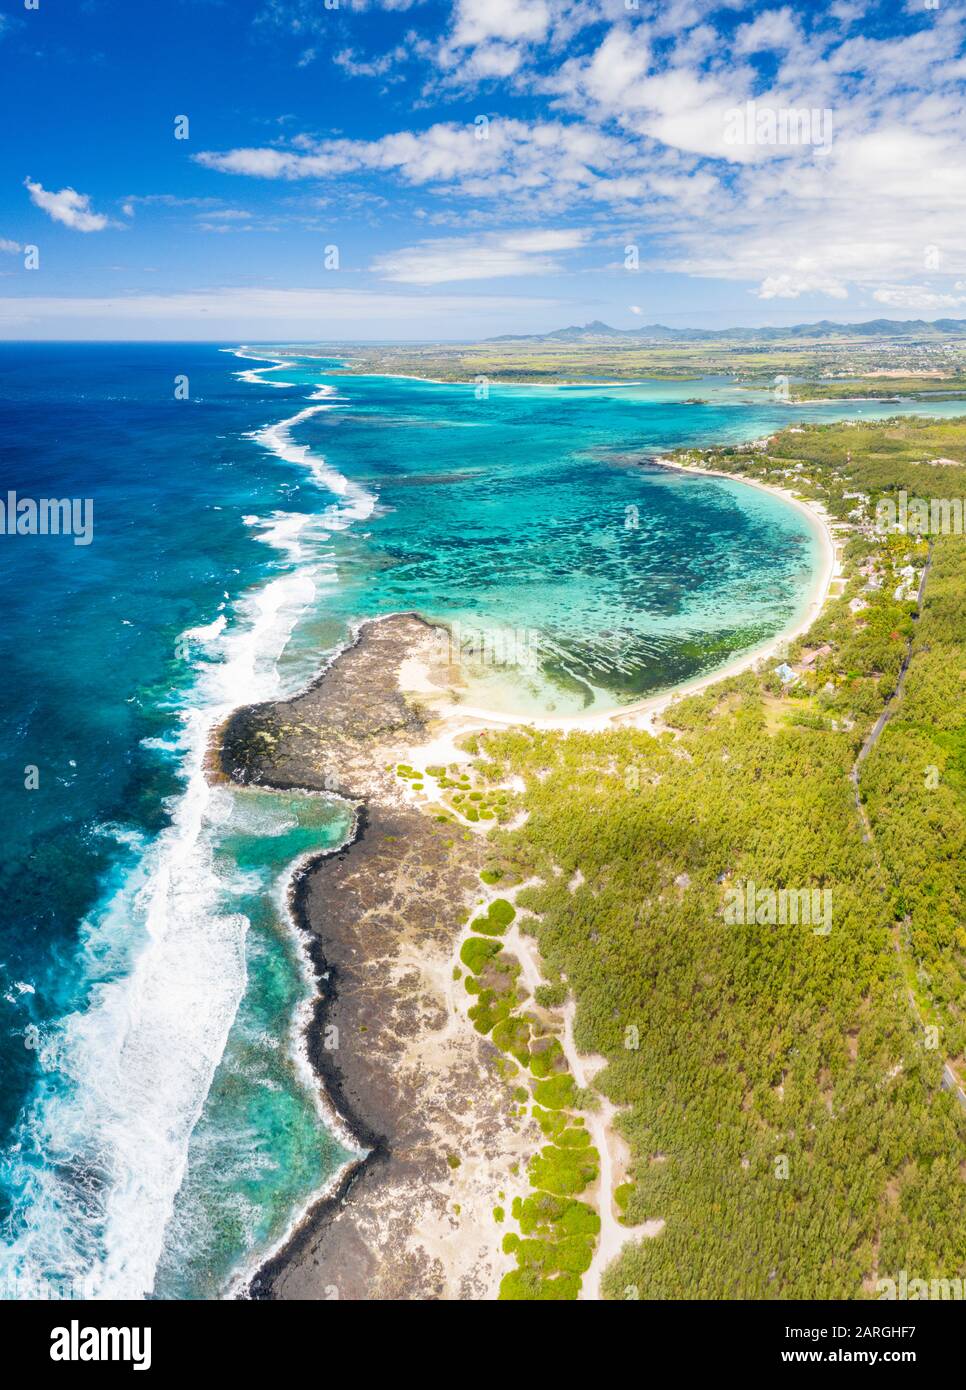 Luftpanorama vom tropischen öffentlichen Strand, der von den Meereswellen gewaschen wird, Poste Lafayette, Ostküste, Mauritius, Indischer Ozean, Afrika Stockfoto